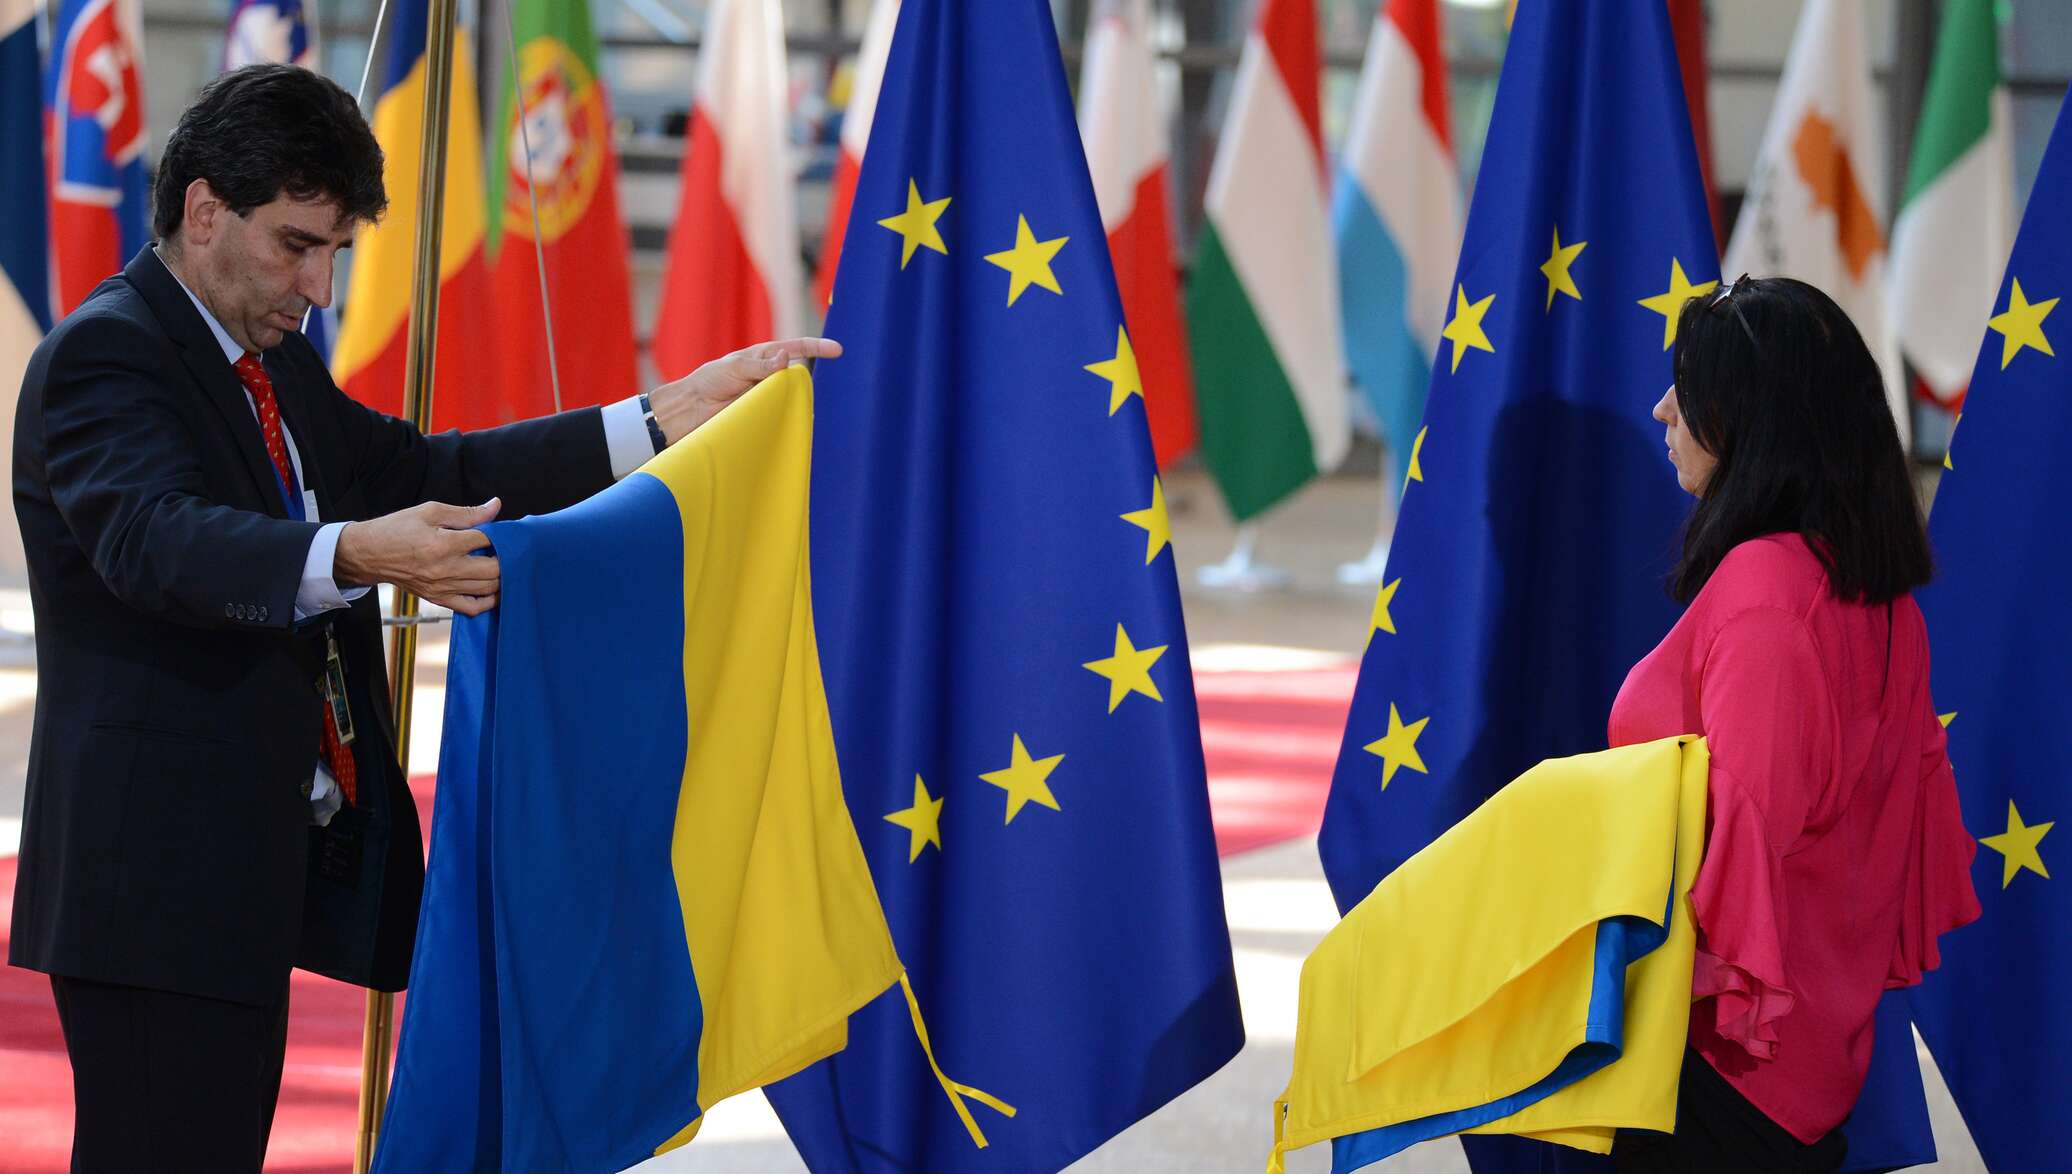 Членство украины. Украина и Европейский Союз. Флаг Украины и ЕС. ЕС РФ Украина флаг. Флаг Украины и Евросоюза.